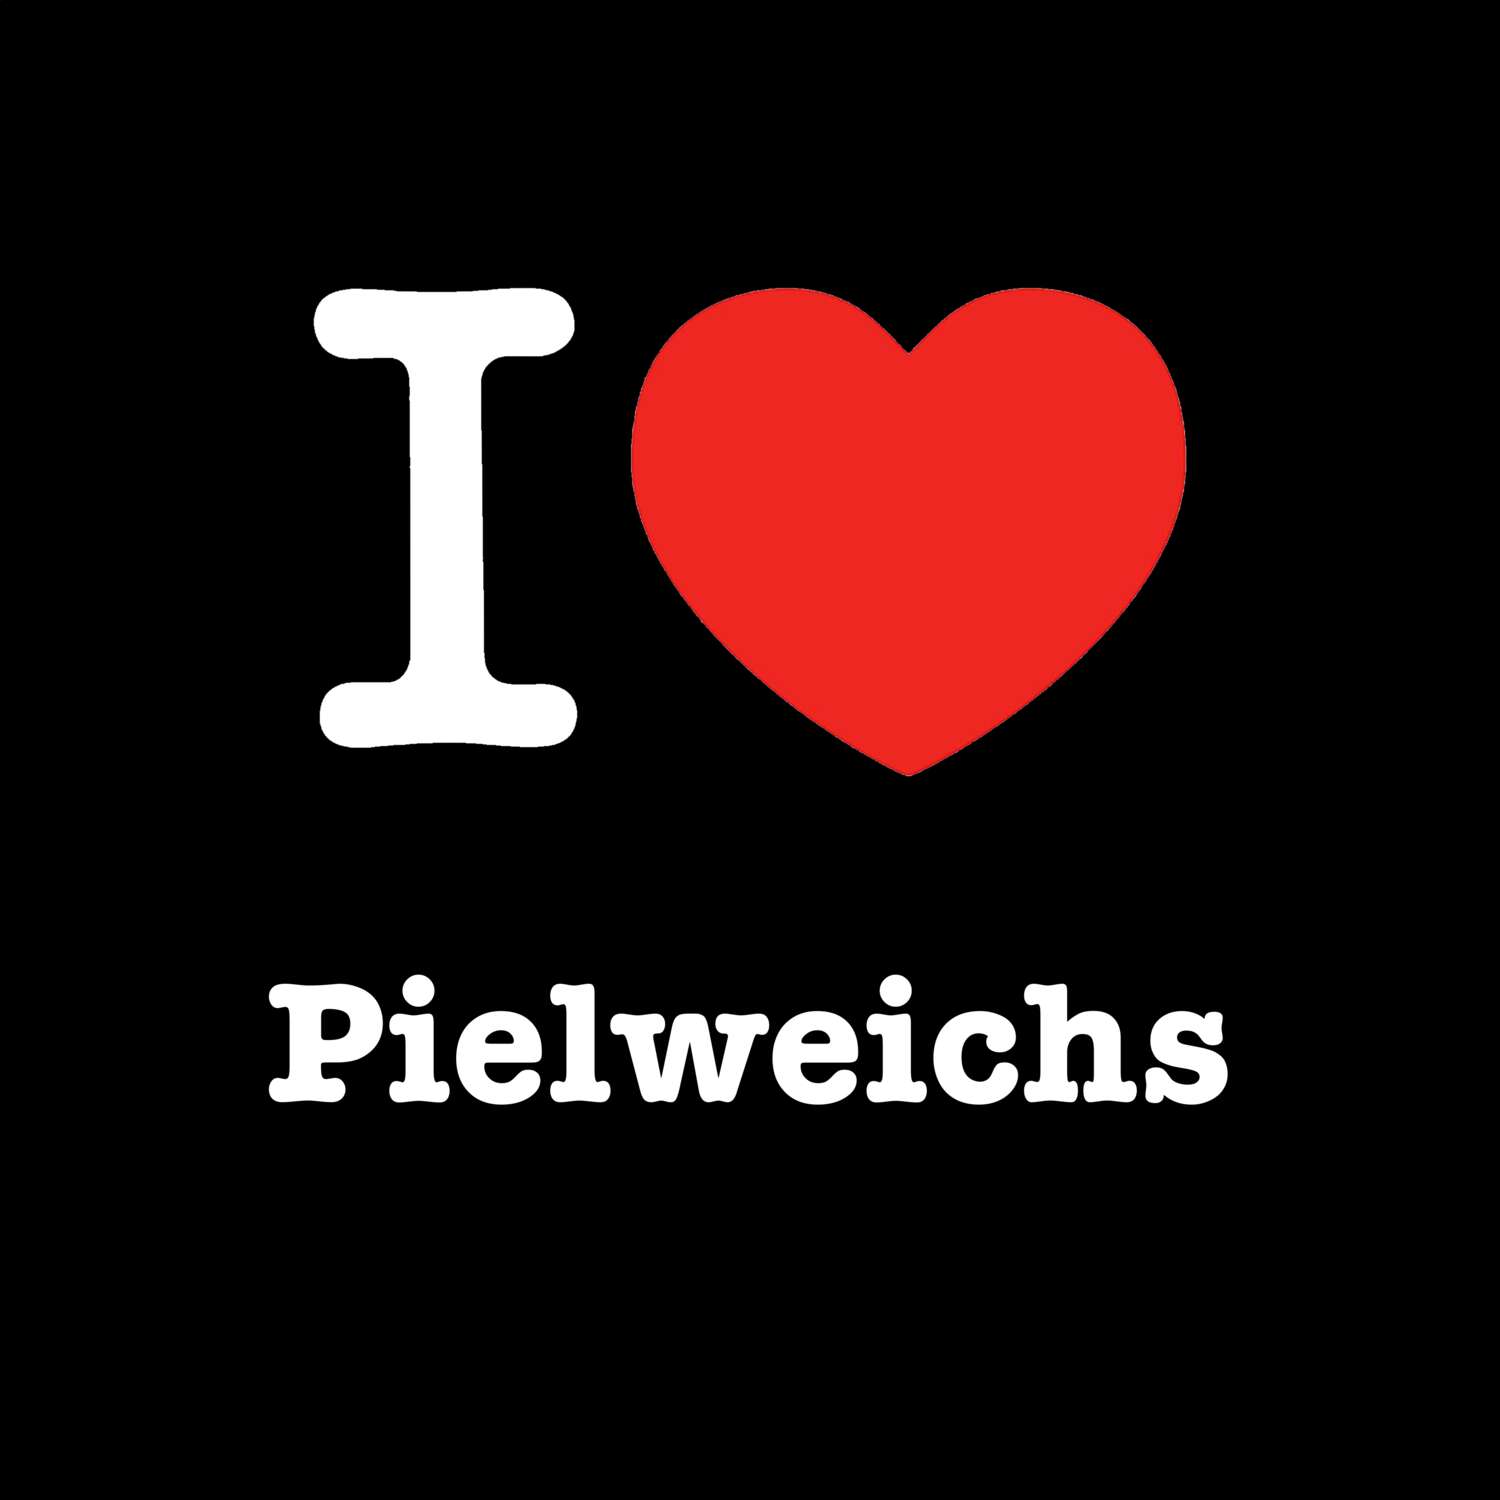 Pielweichs T-Shirt »I love«